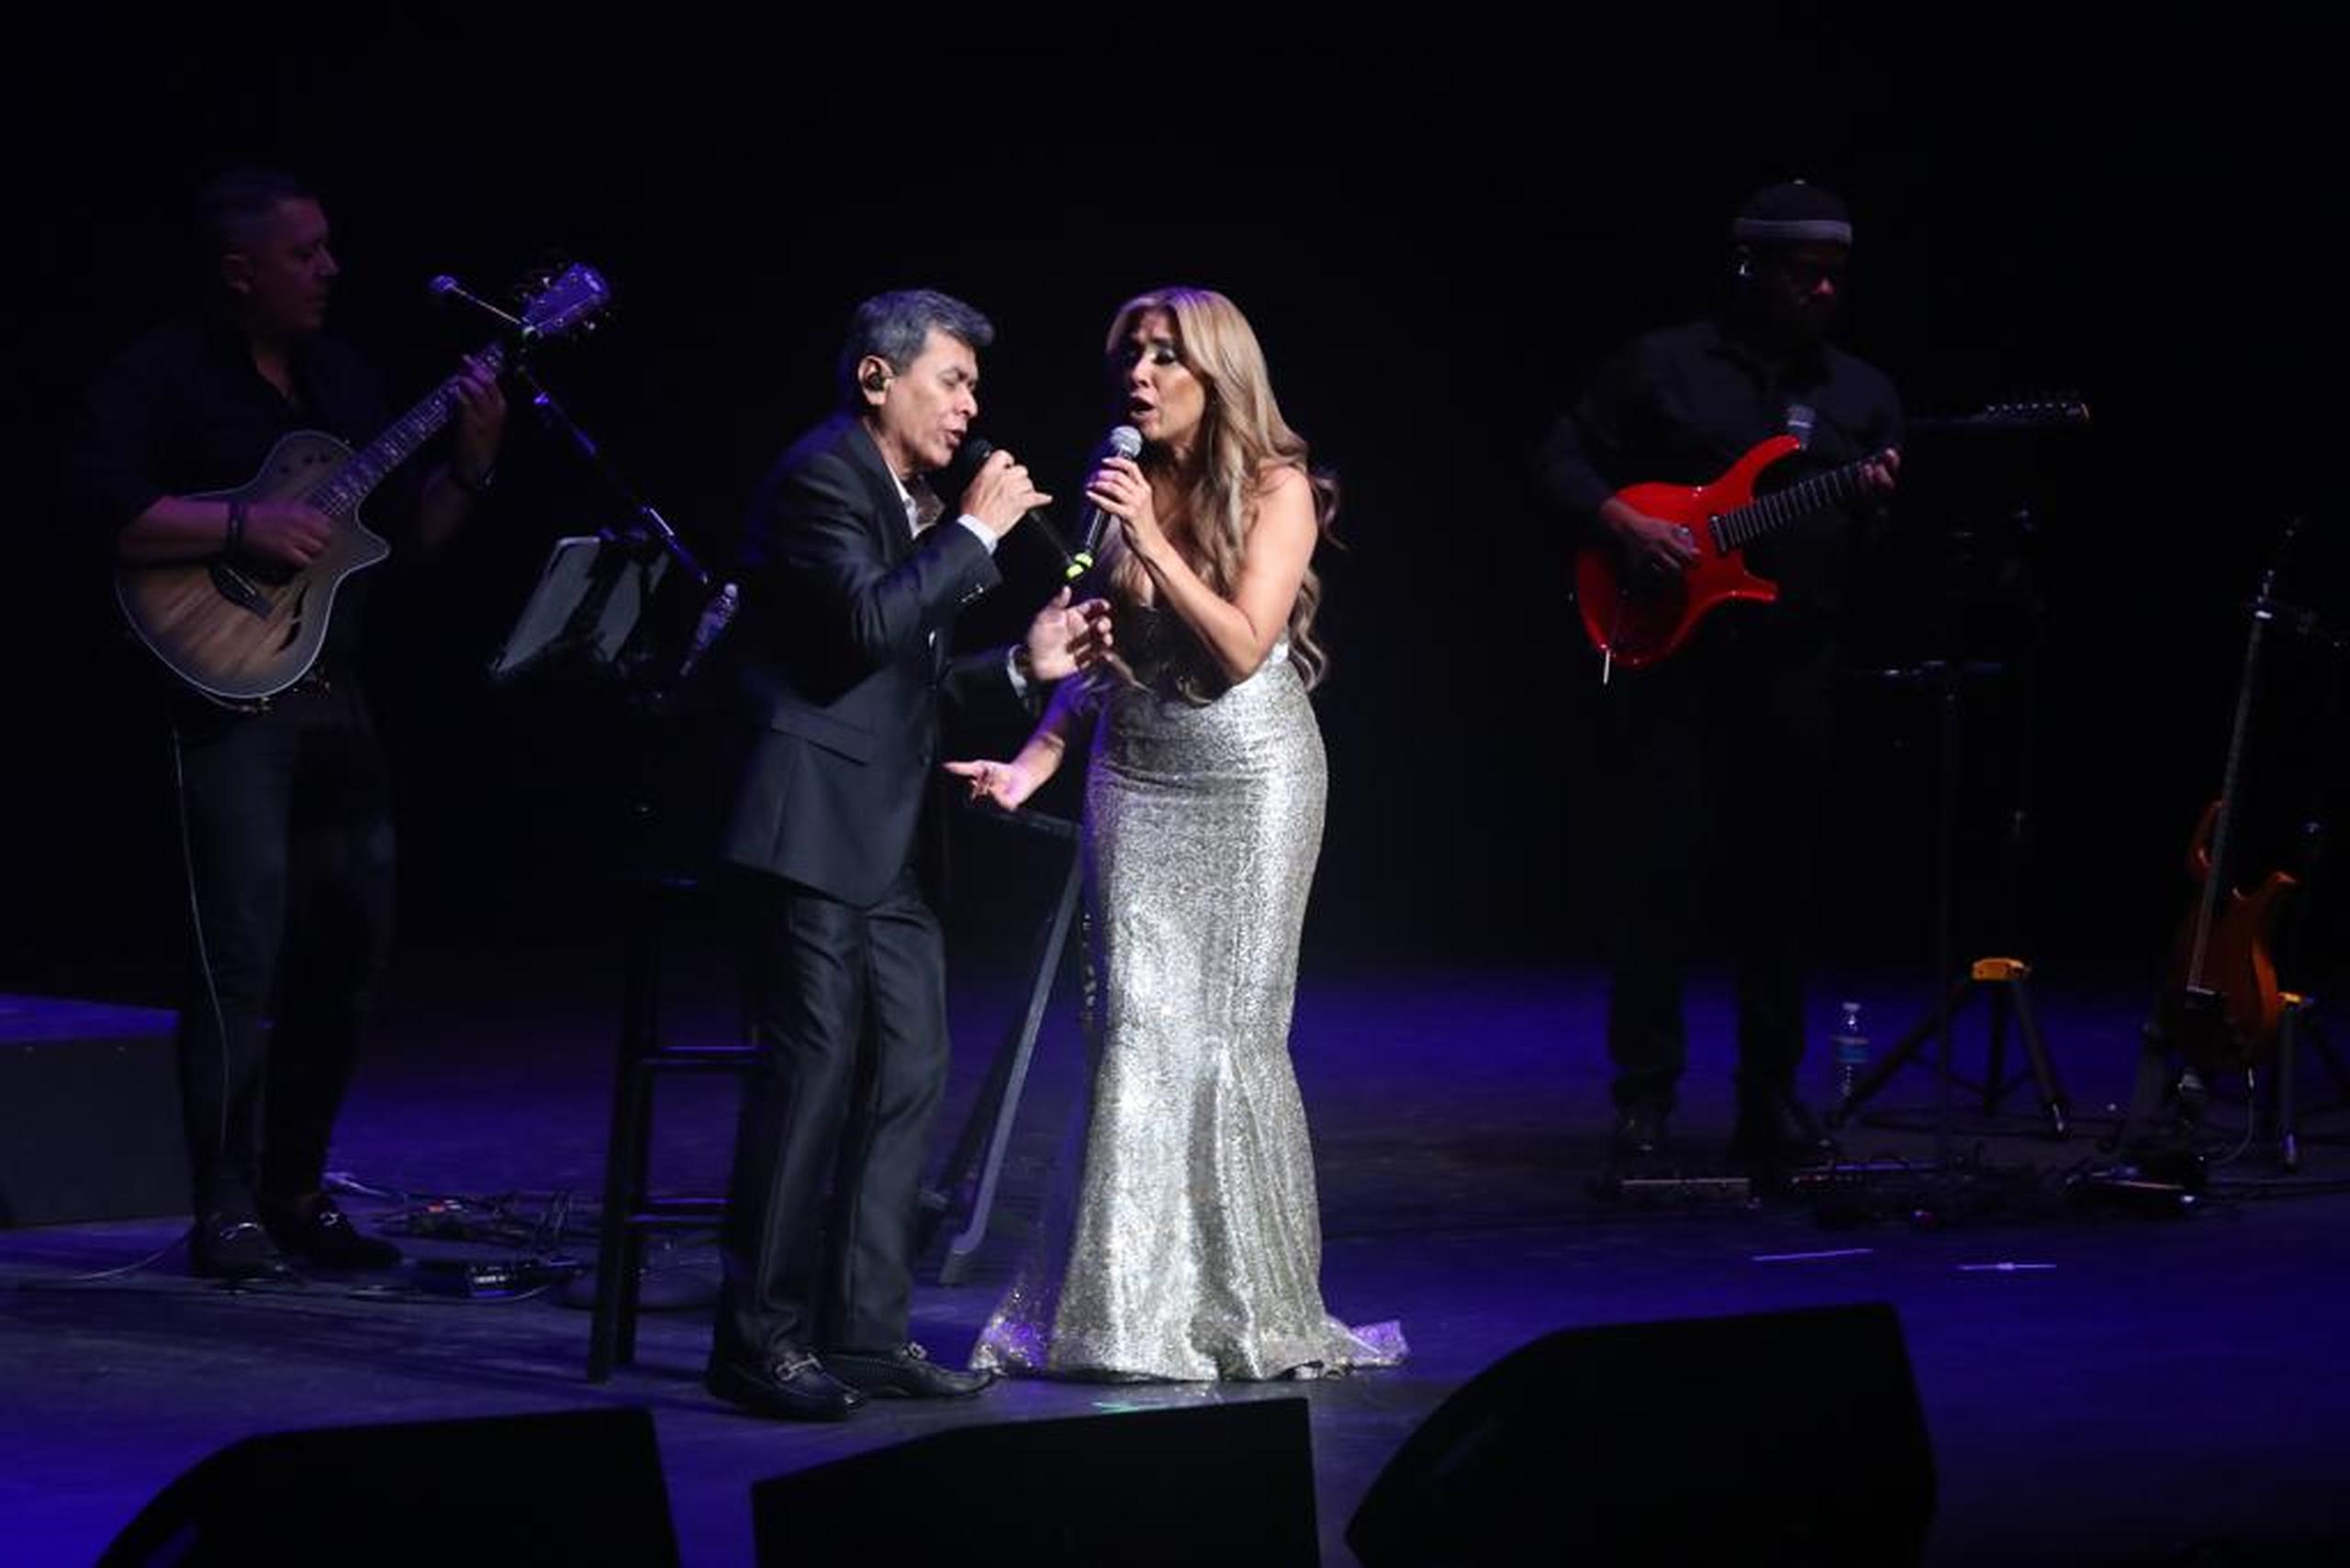 Alvaro Torres y Lourdes Robles complacieron cantando juntos los temas "Mi amor por ti" y "Buenos amigos".